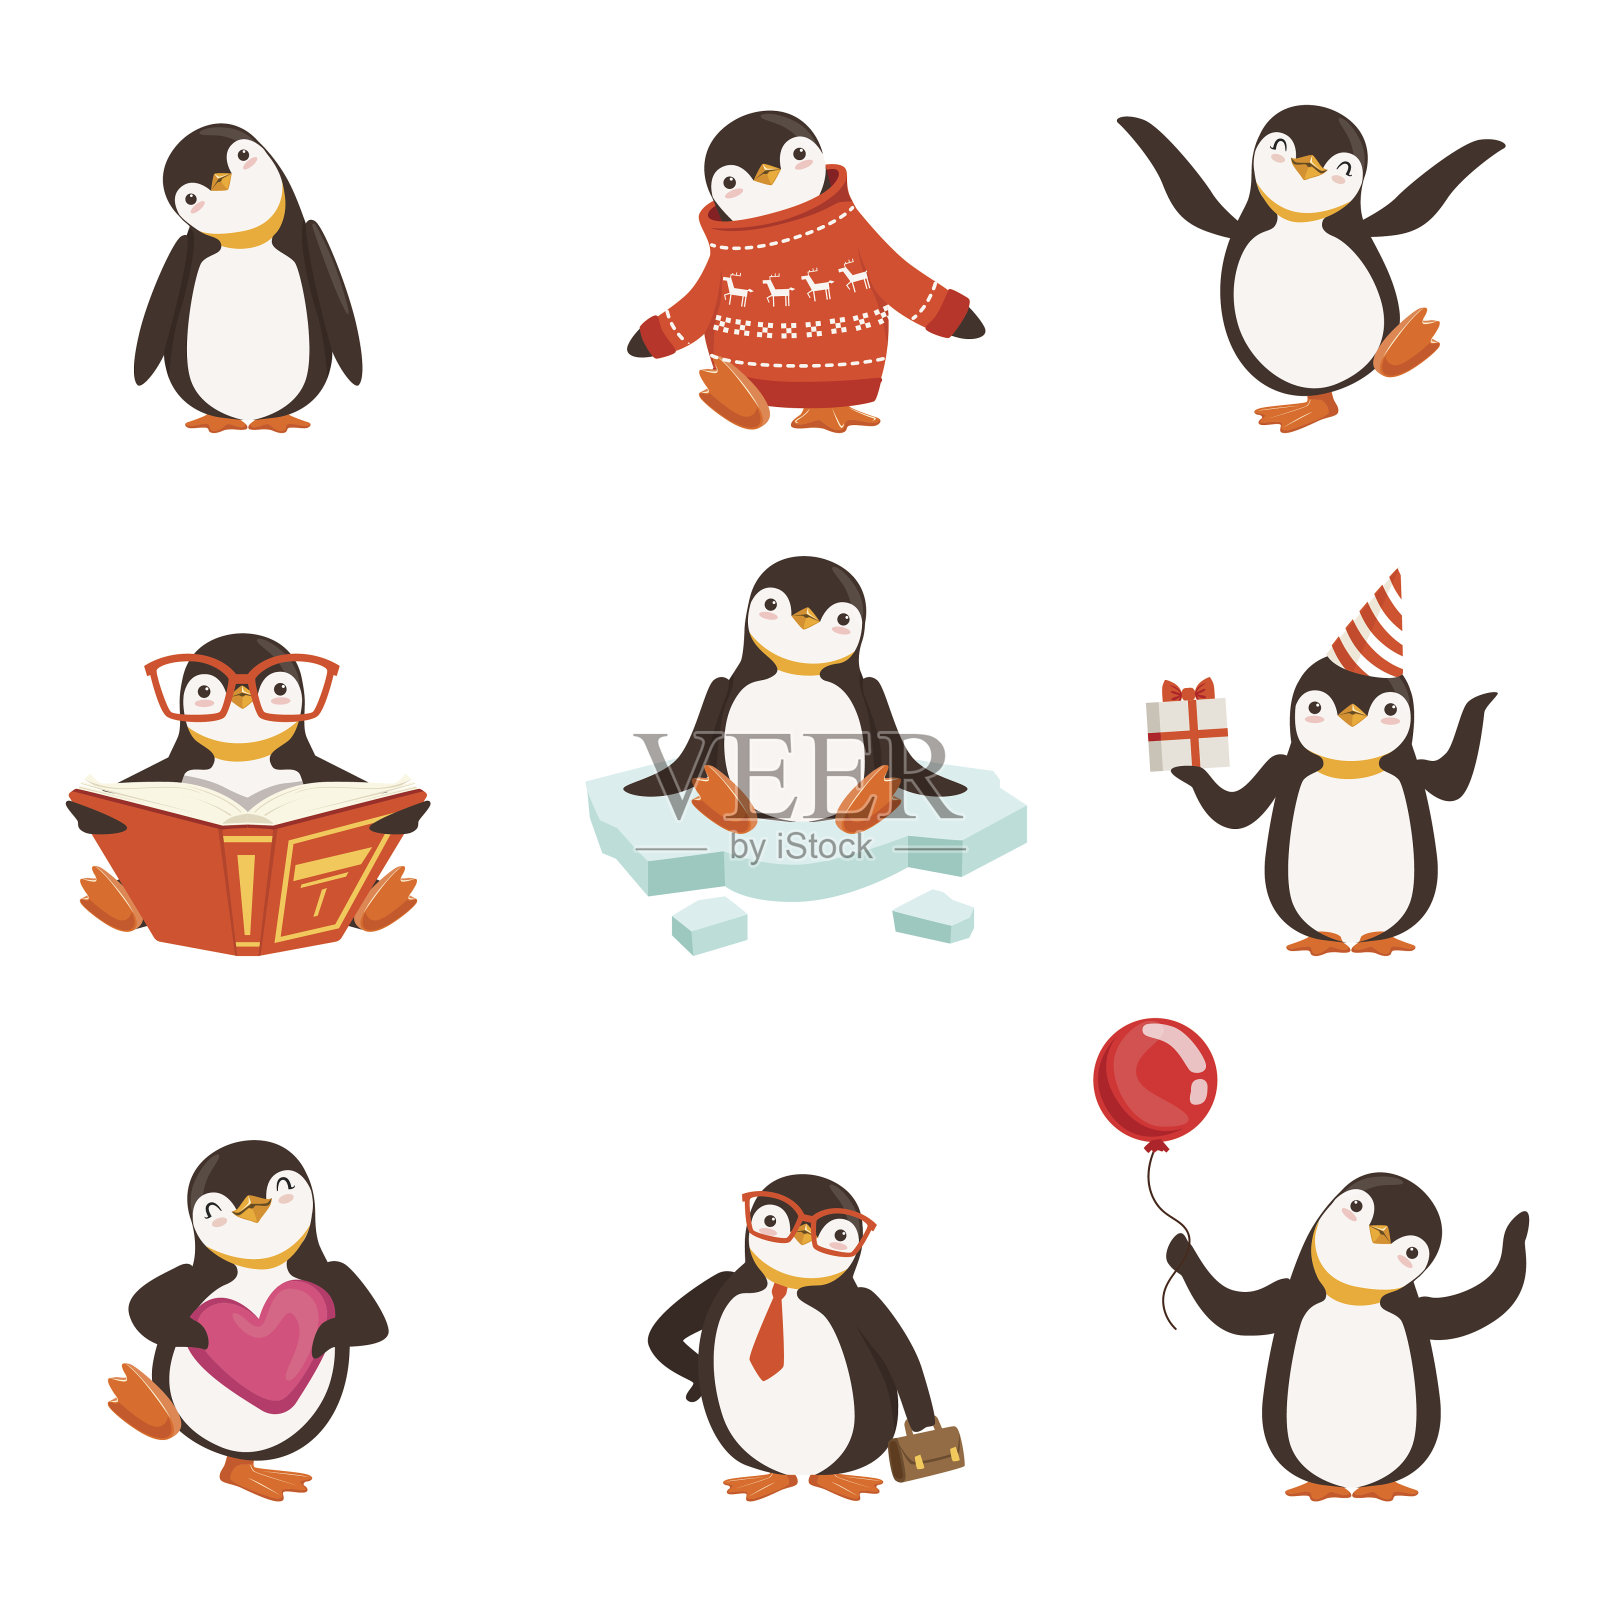 可爱的小企鹅卡通人物为标签设计。彩色详细矢量插图插画图片素材